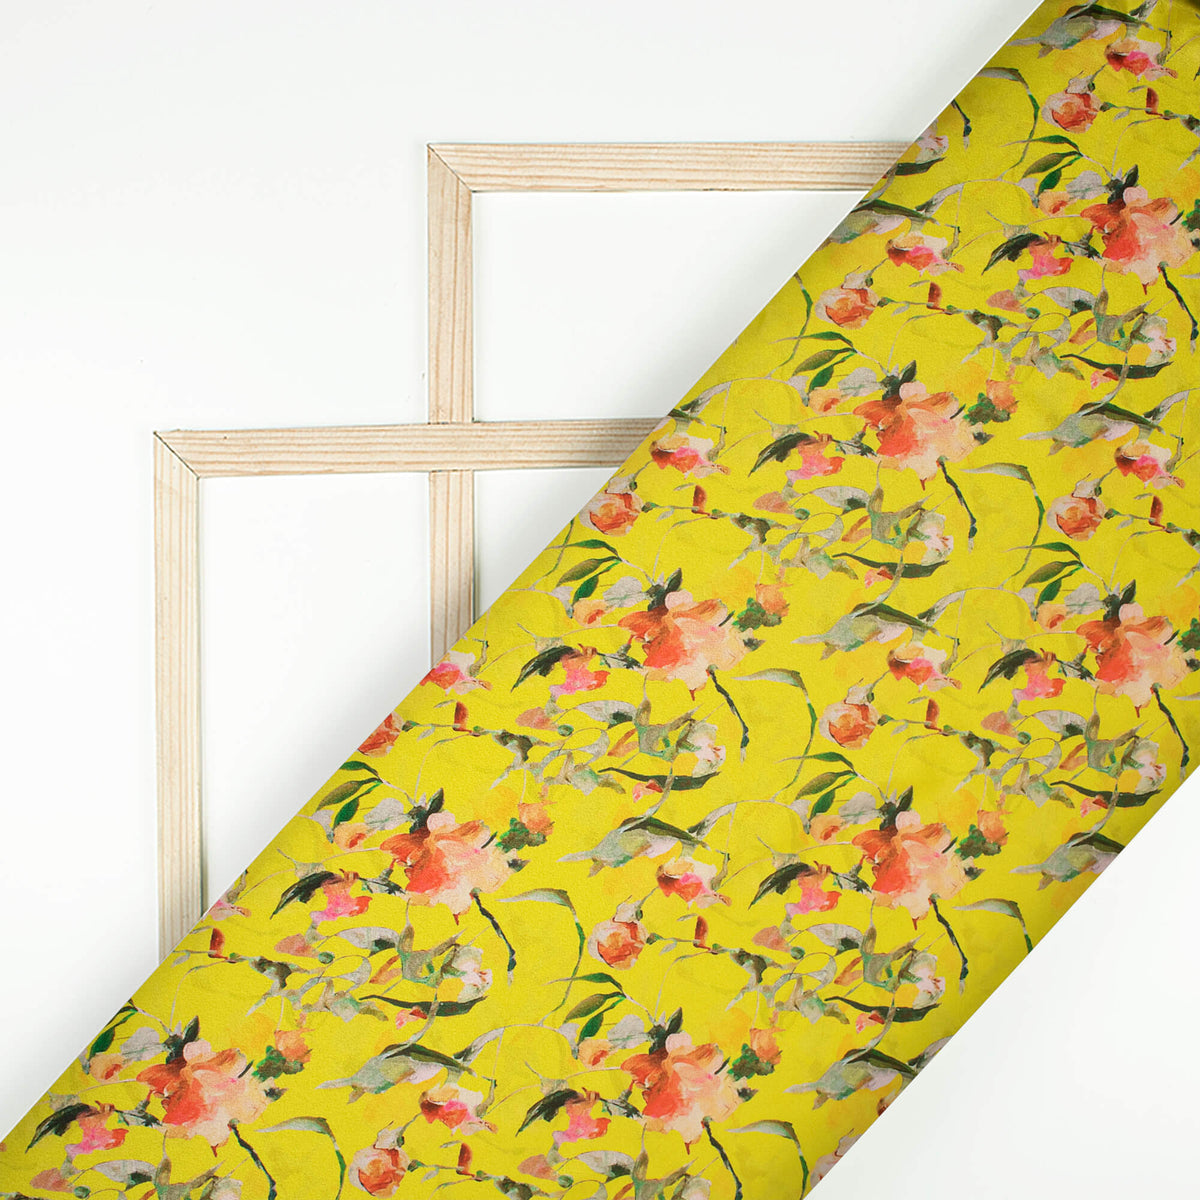 Botenical Floral Digital Print Crepe Silk Fabric